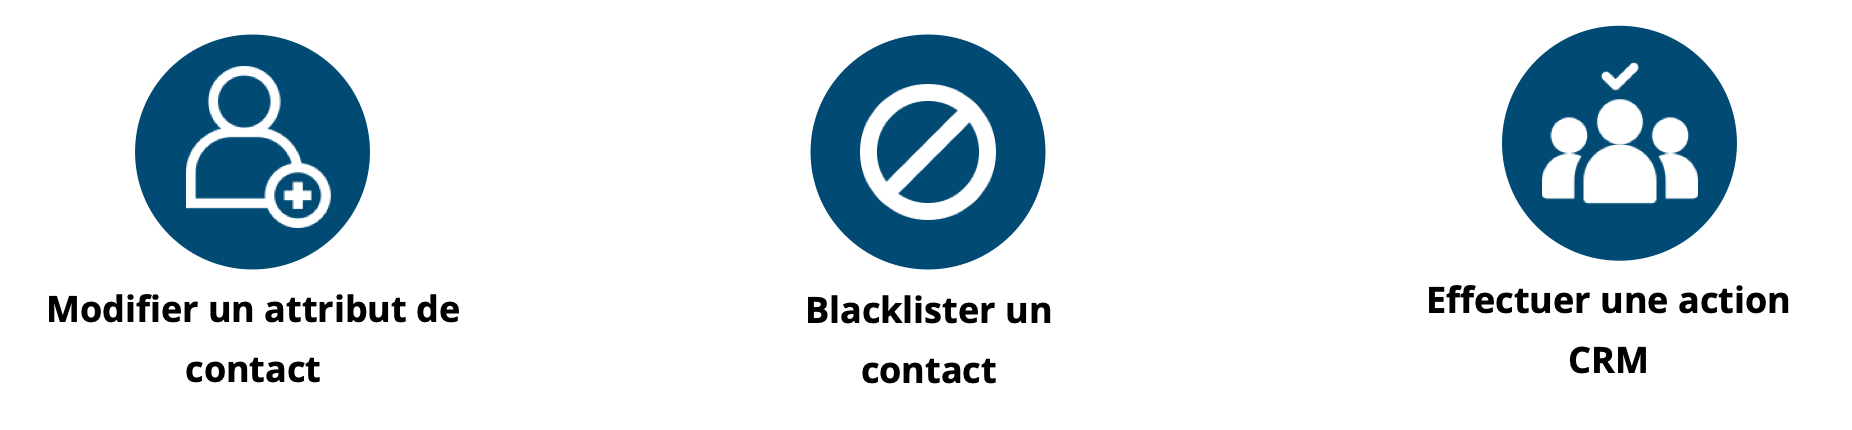 Update_Blacklist_CRM__FR.png